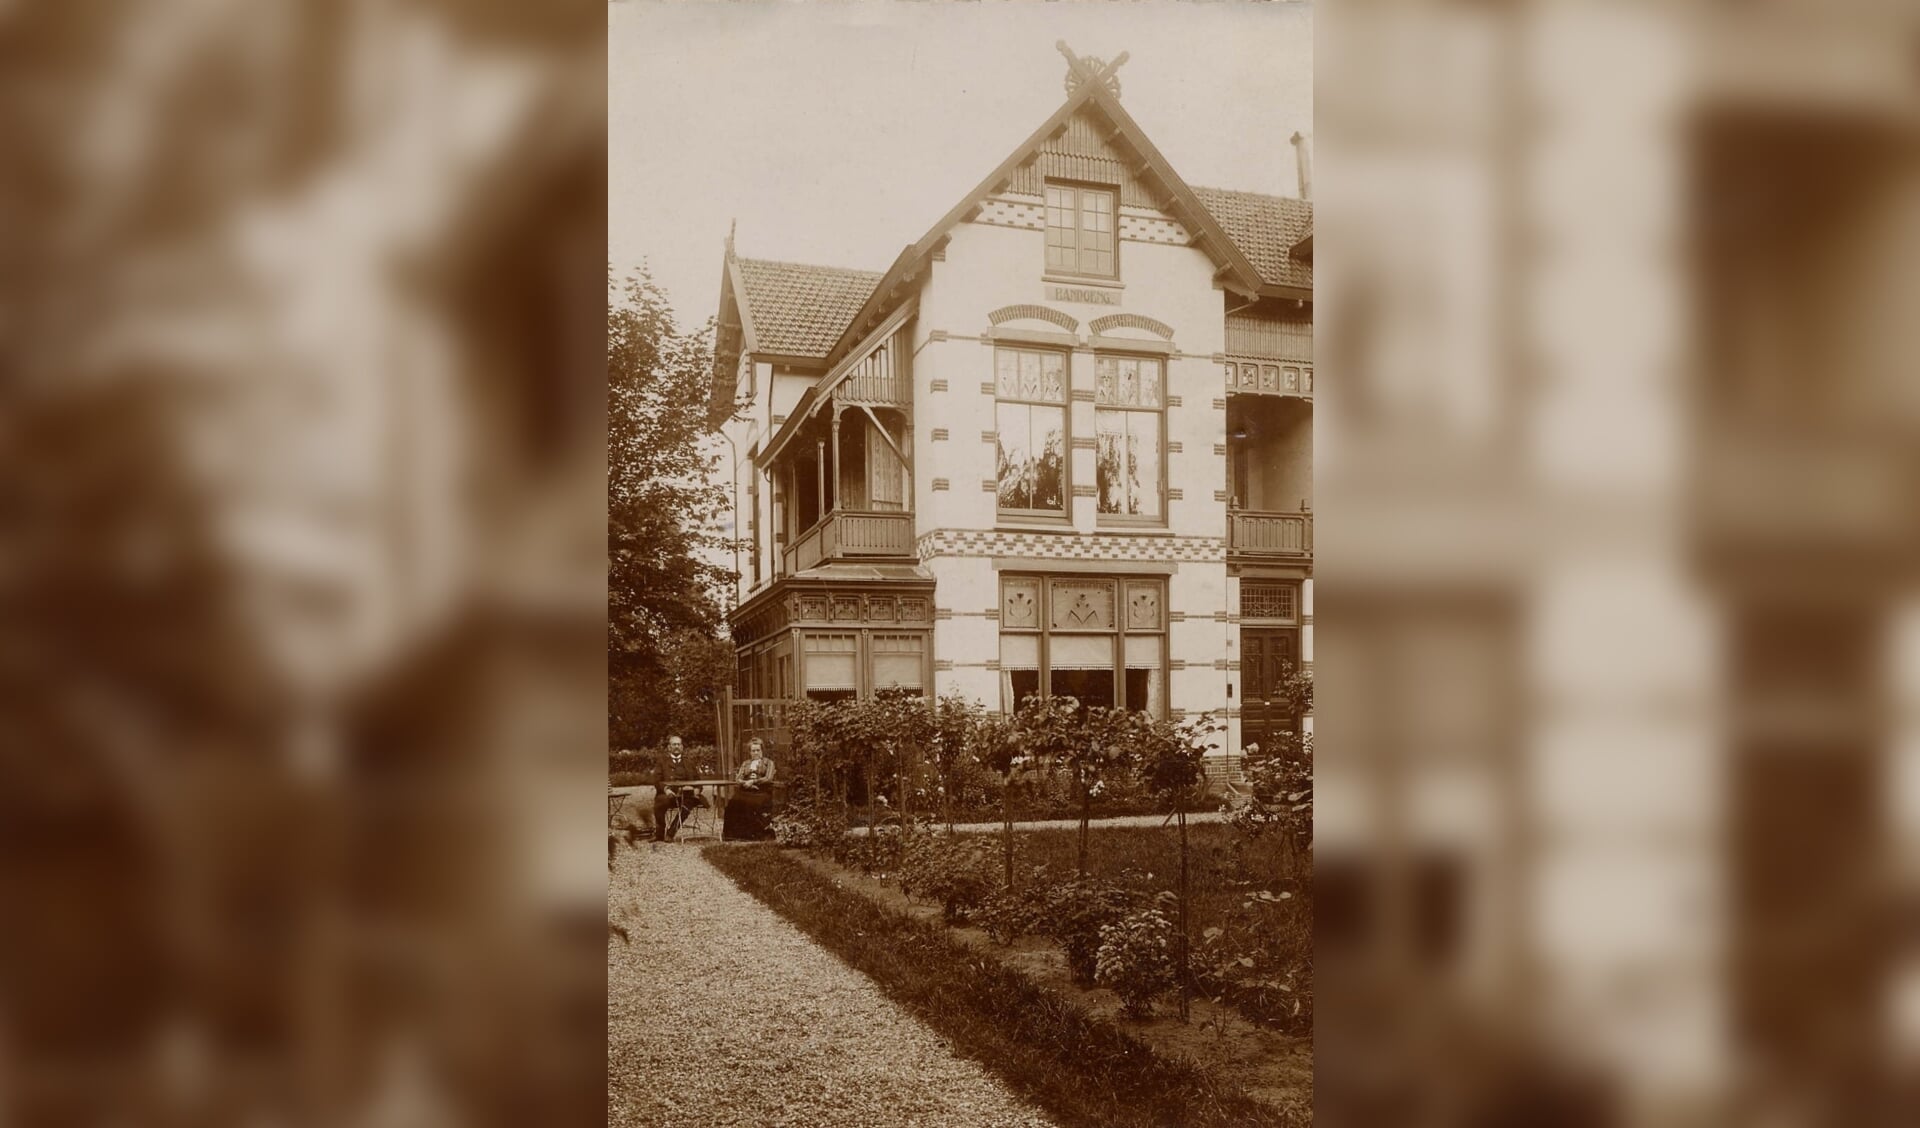 Villa Bandoeng (1901) aan de Soestdijkseweg, met eerste bewoners Daniël Male en Hermina van der Schuijt. Te bezoeken op 11 september.